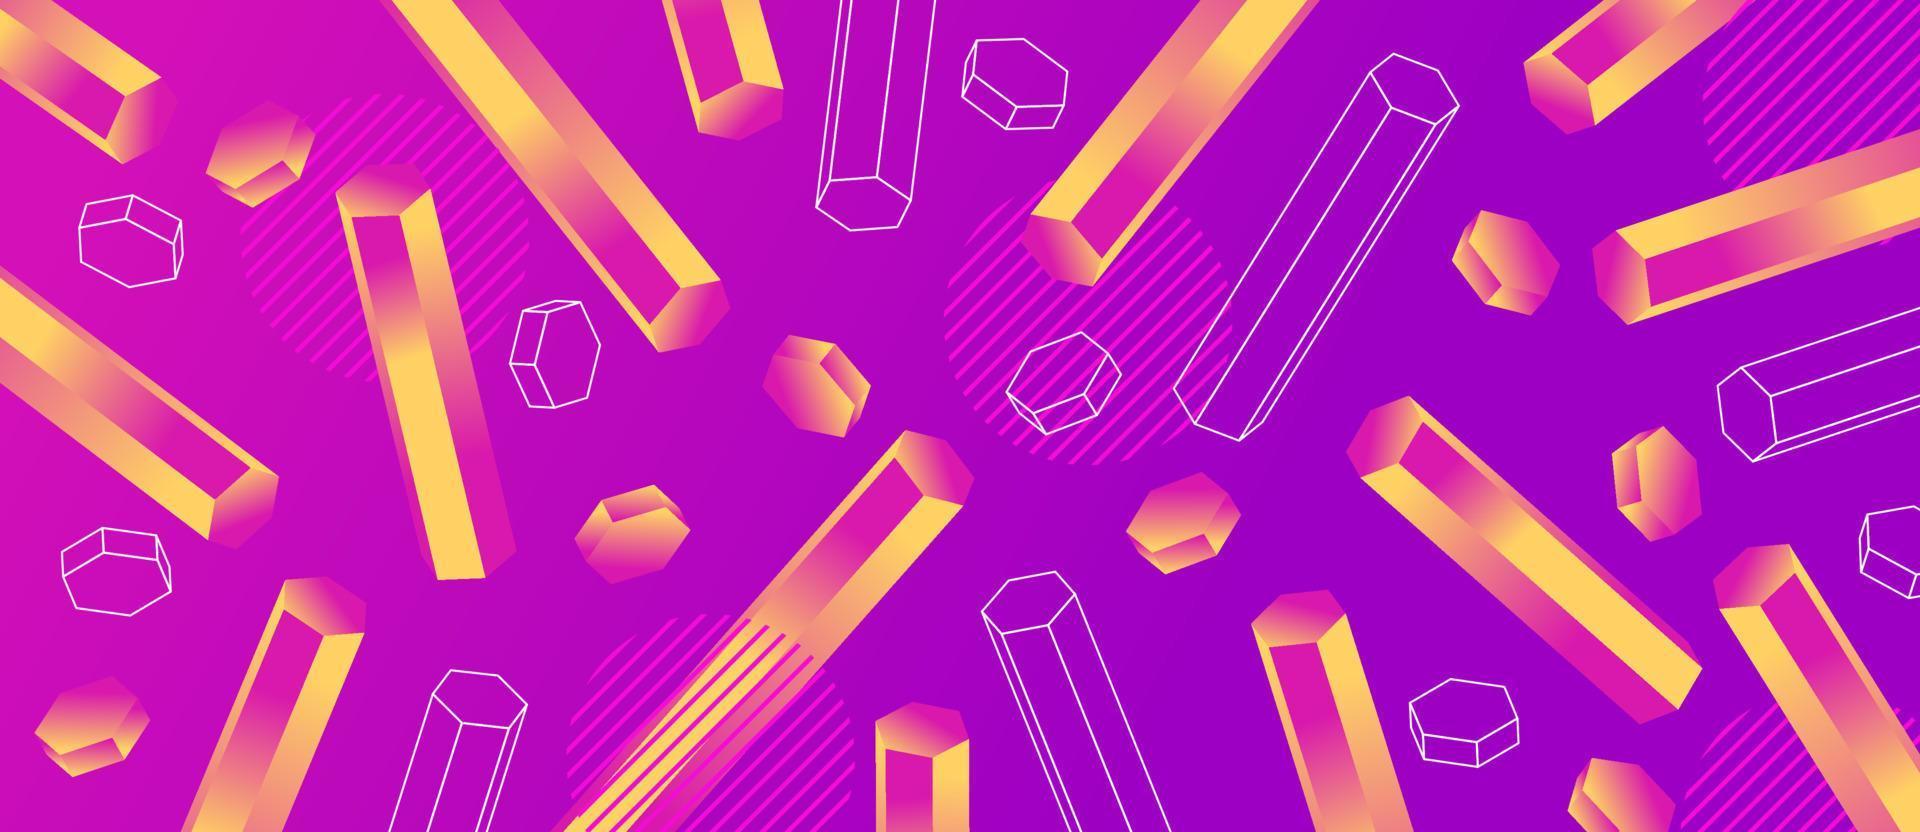 colorido neón degradado animado, tubo hexagonal rosa, amarillo. Fondo abstracto futurista de forma geométrica 3d. vector